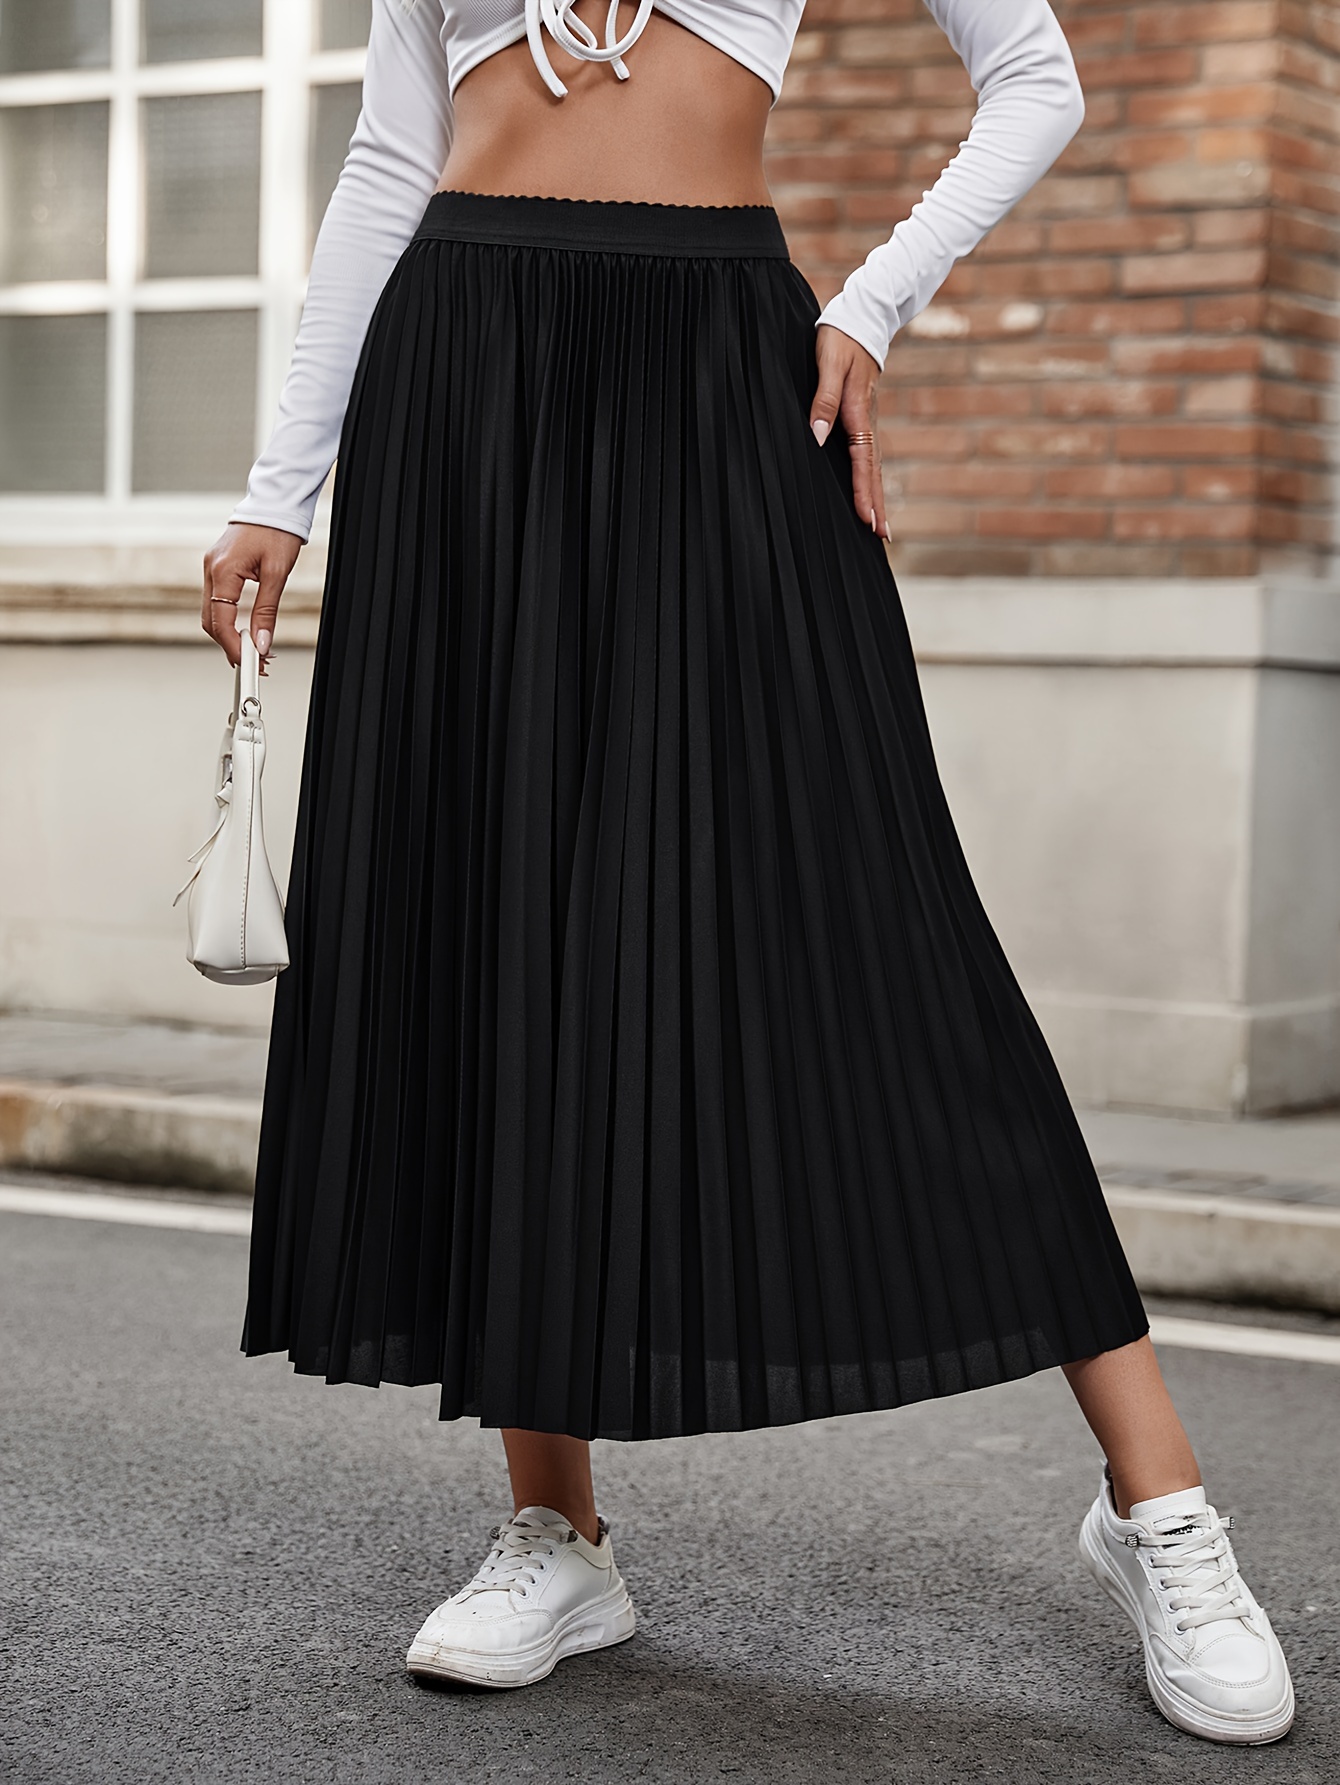 Solid Pleated Elastic Waist Skirt, Versatile Swing Skirt For Spring & Fall,  Women's Clothing